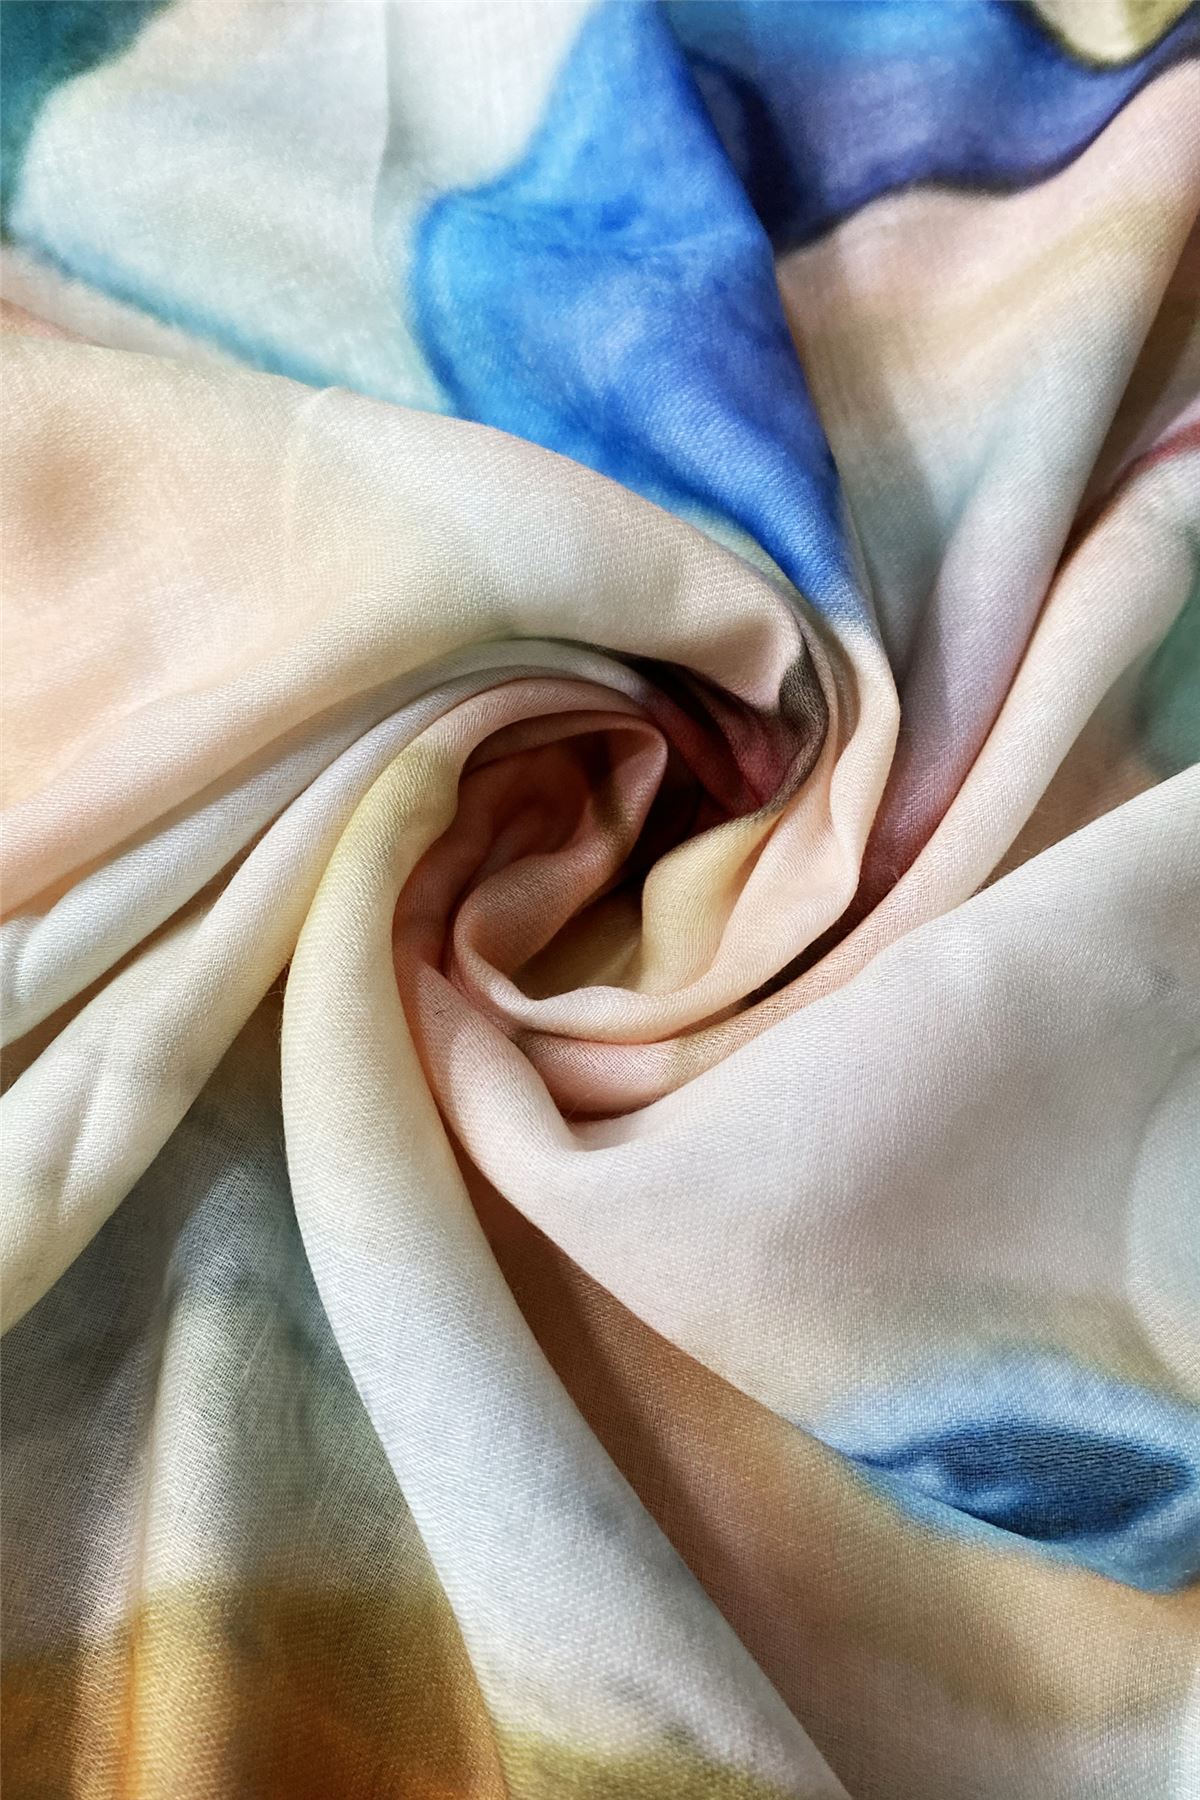 Bufanda-Mantón de algodón, 70 cm x 180 cm, Picasso - Retrato de estilo abstracto